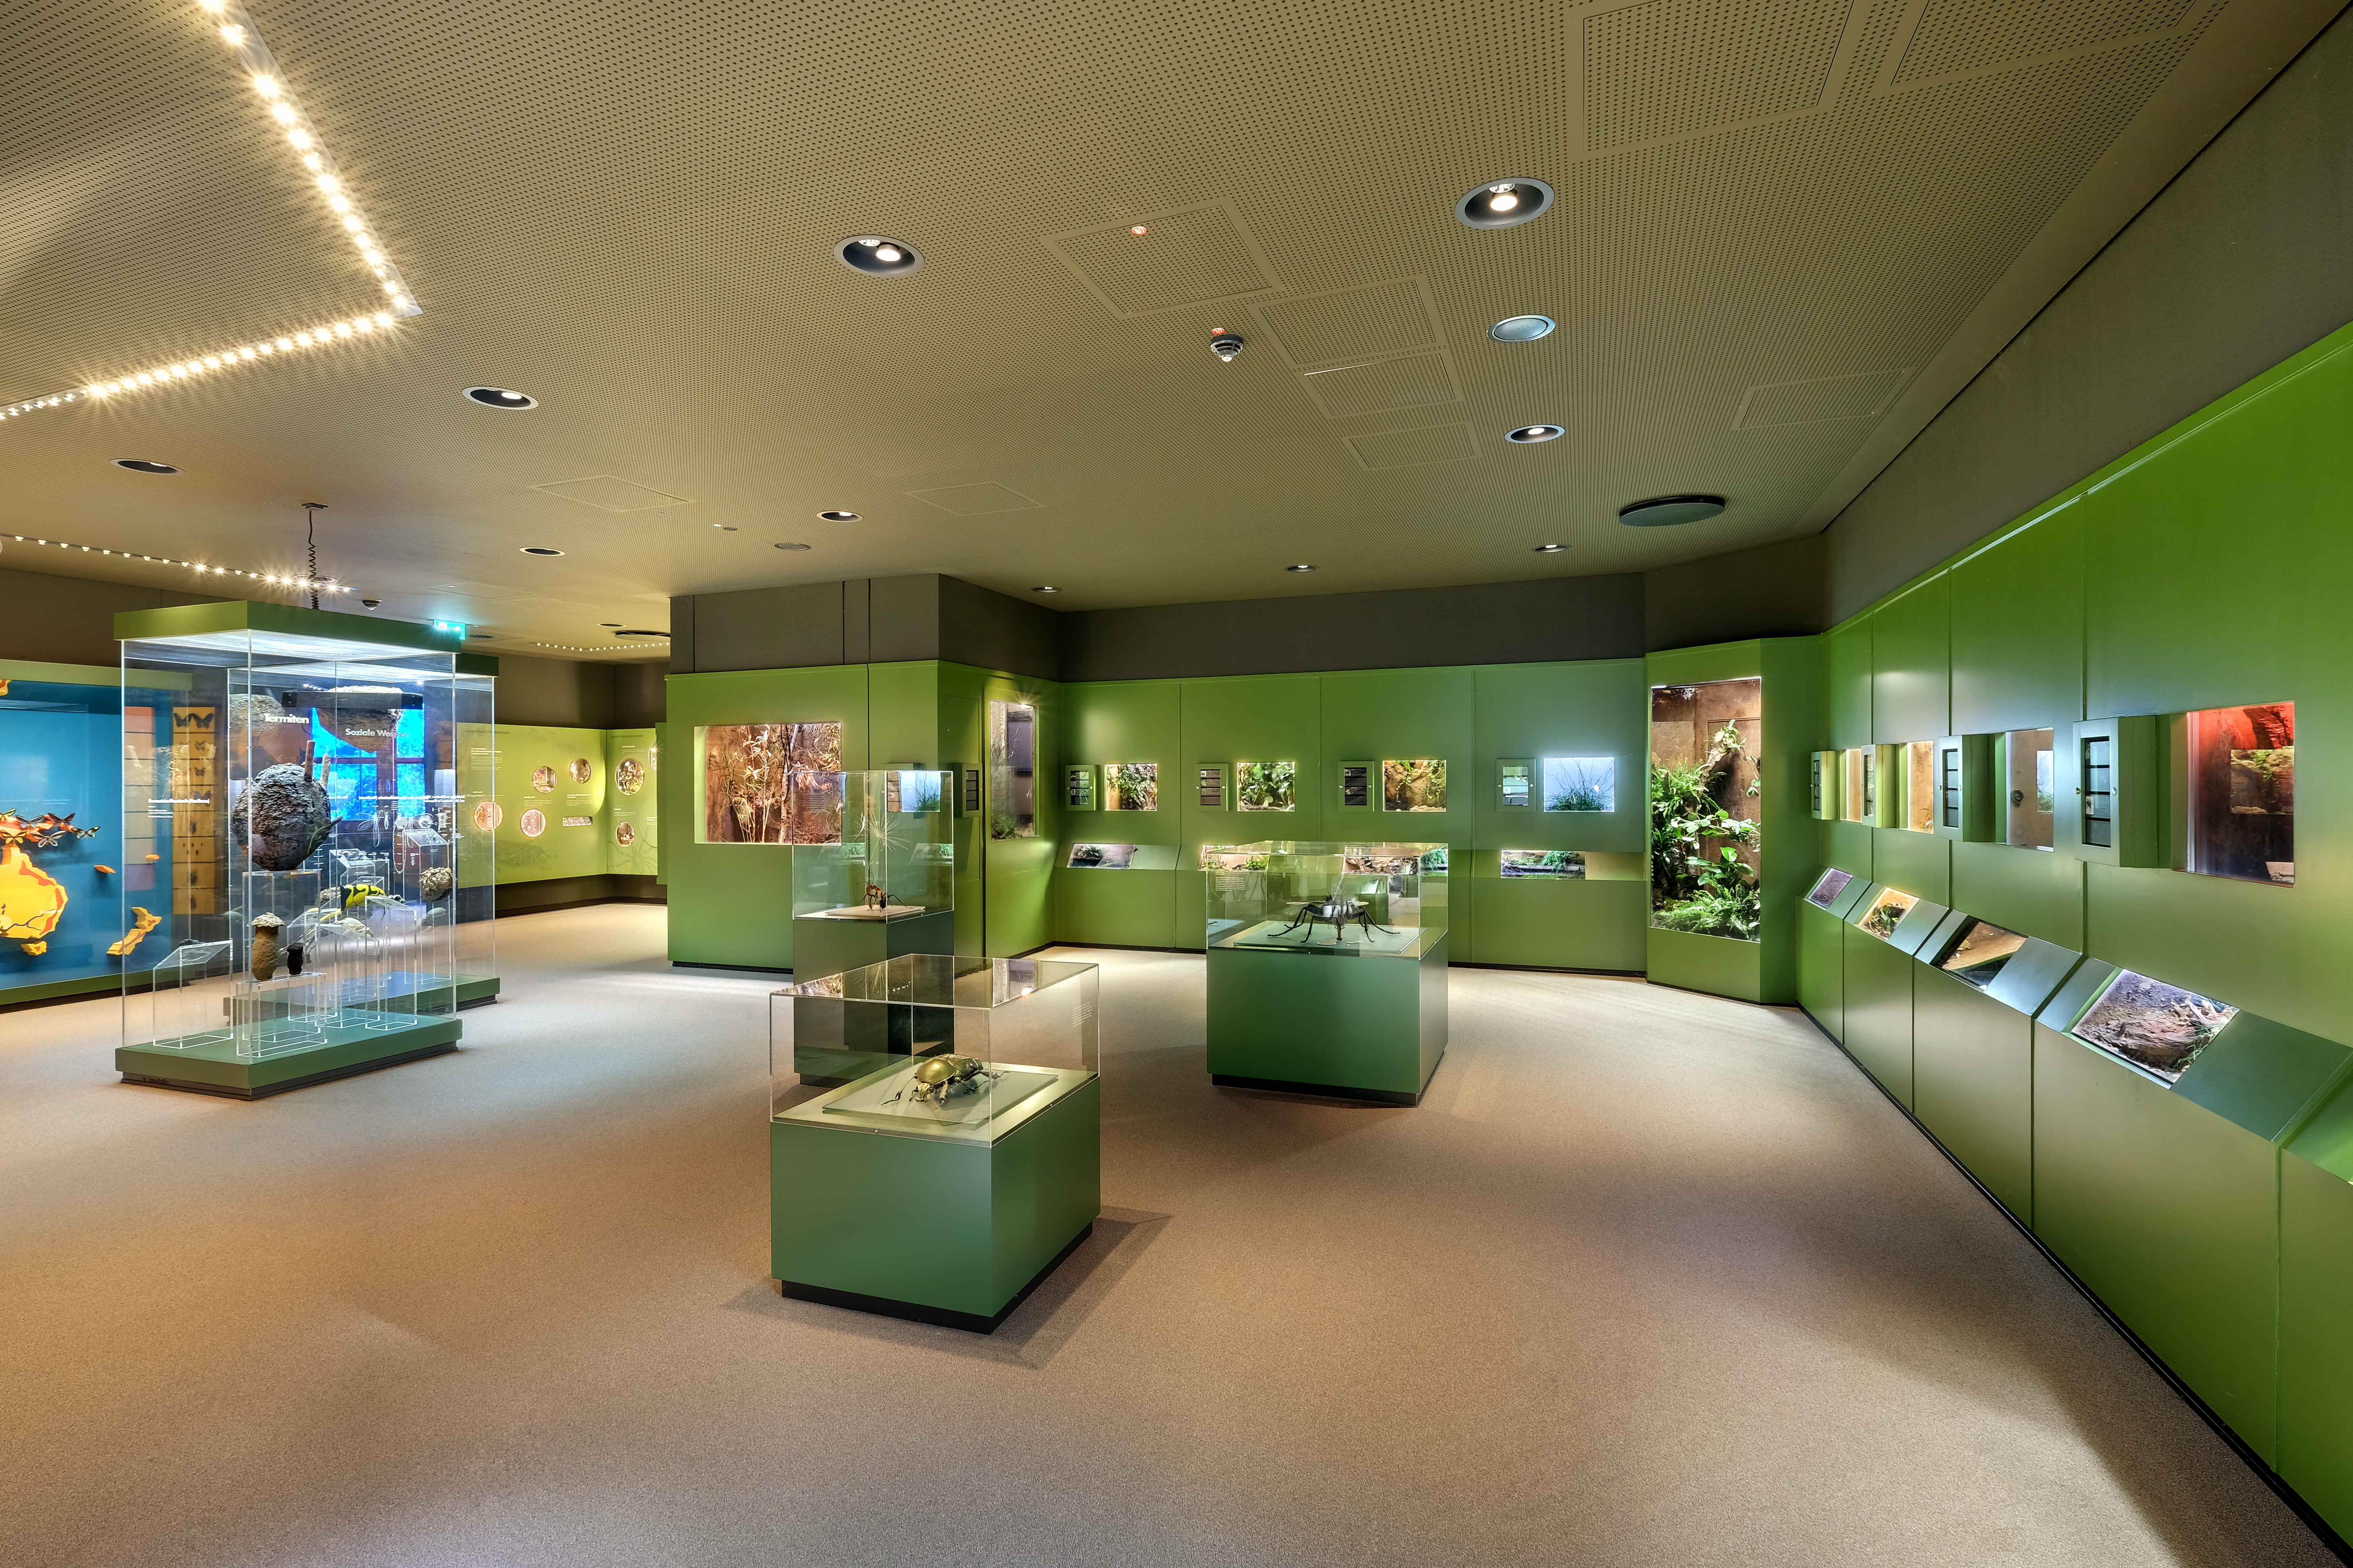 Das Bild zeigt einen Blick in den grünen Ausstellungsbereich "Vielfalt der Gliederfüßer" mit zahlreichen Terrarien und Insektenmodellen